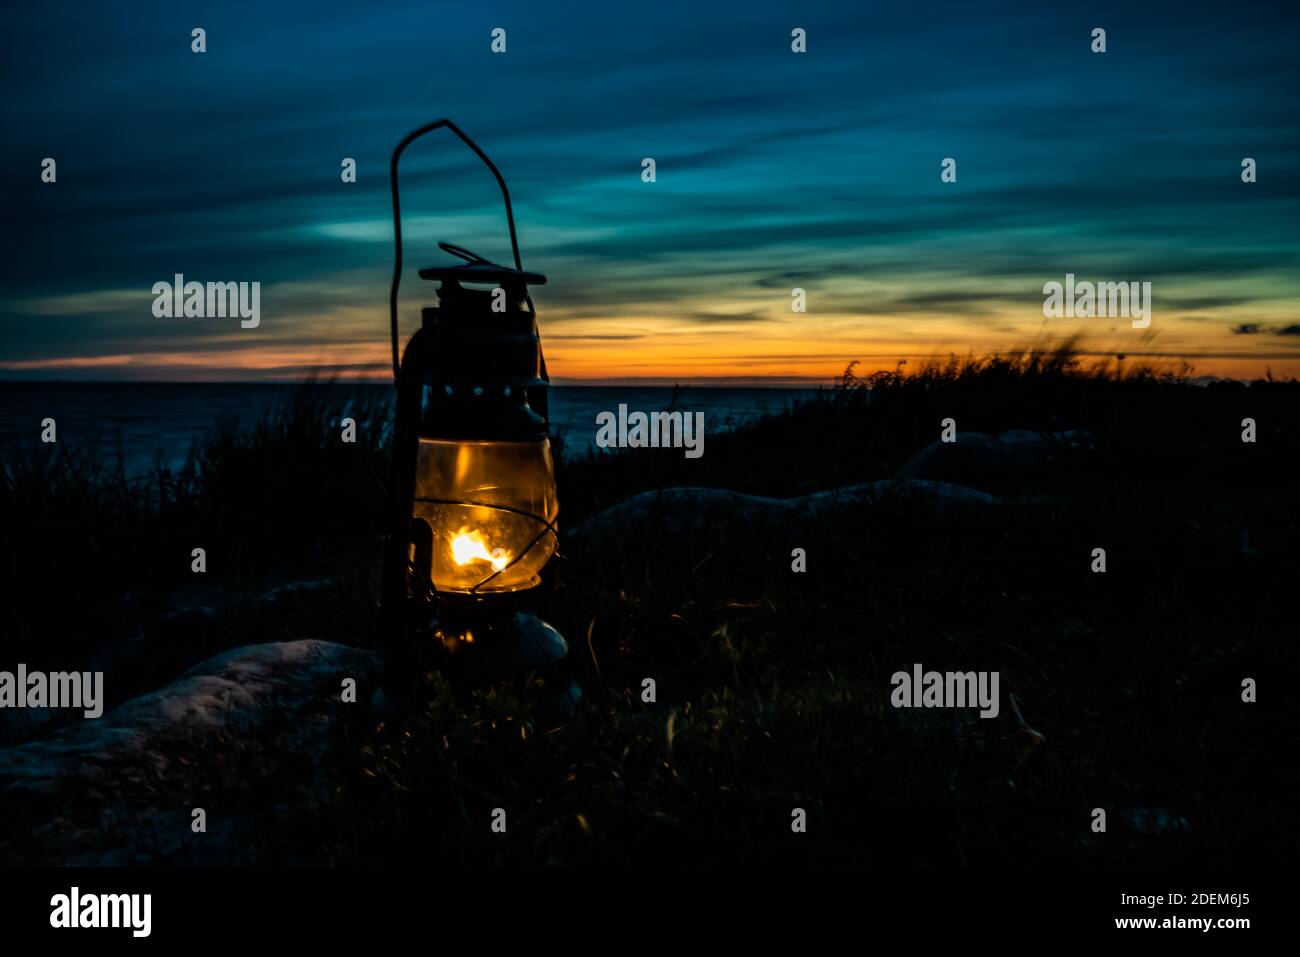 Vecchia classica lanterna a olio che brucia con una fiamma arancione vicino all'oceano al tramonto. . Foto di alta qualità Foto Stock